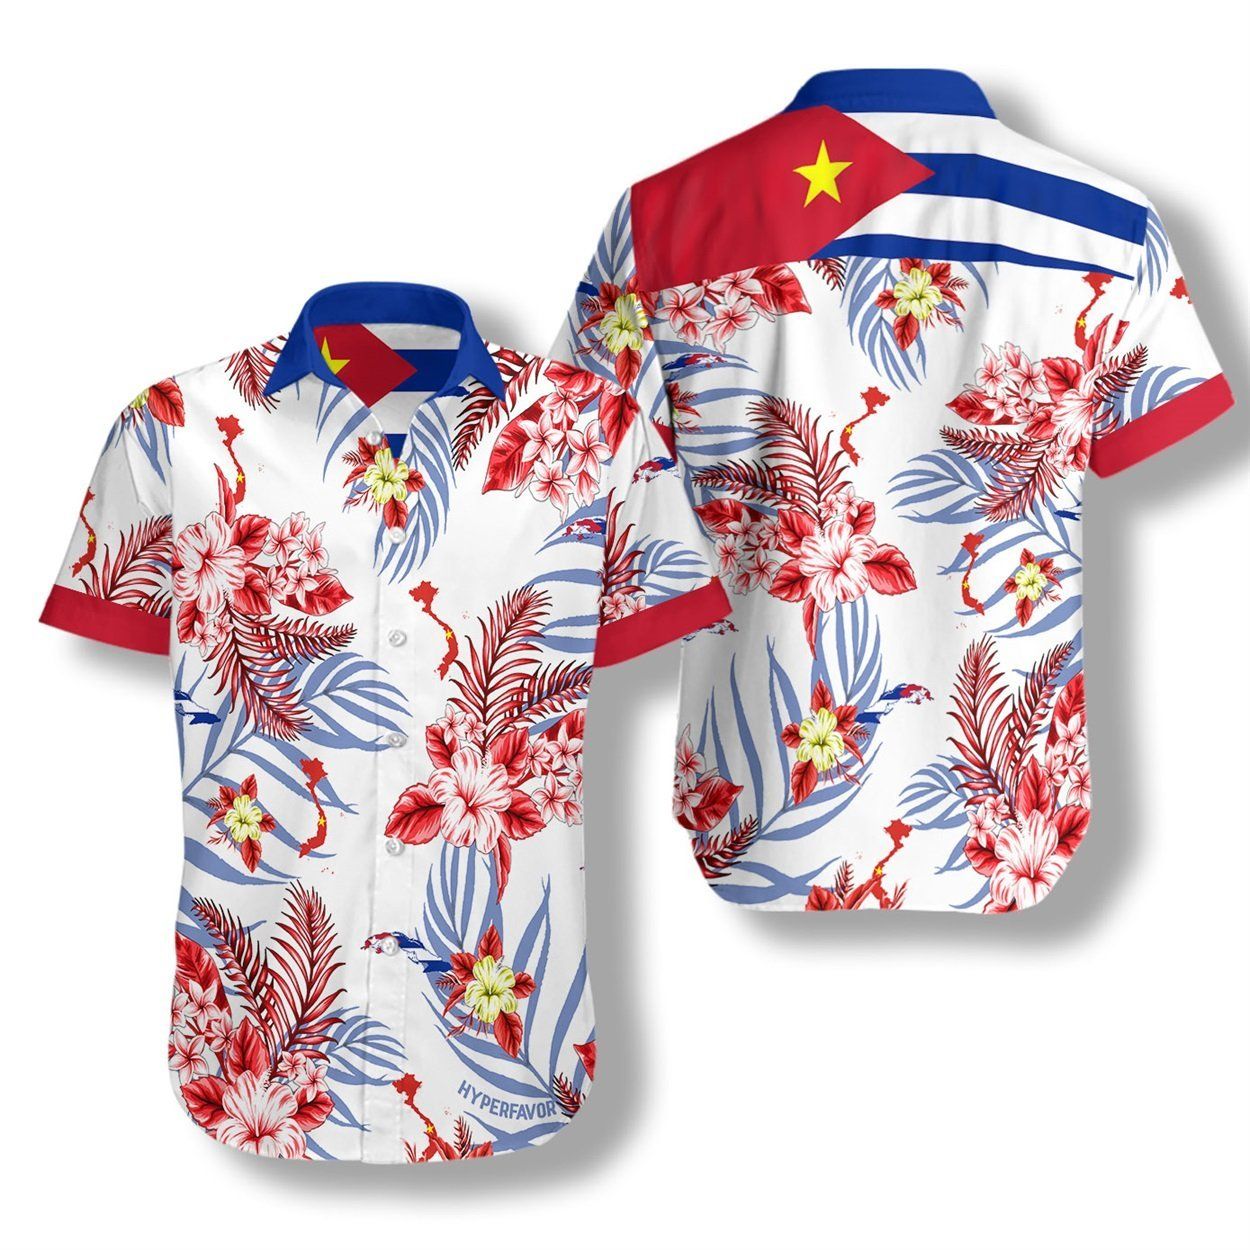 Por Cuba Vietnam Tambin Est Dispuesta A Dar Hasta Su Propia Sangre Ez05 0708 Hawaiian Shirt